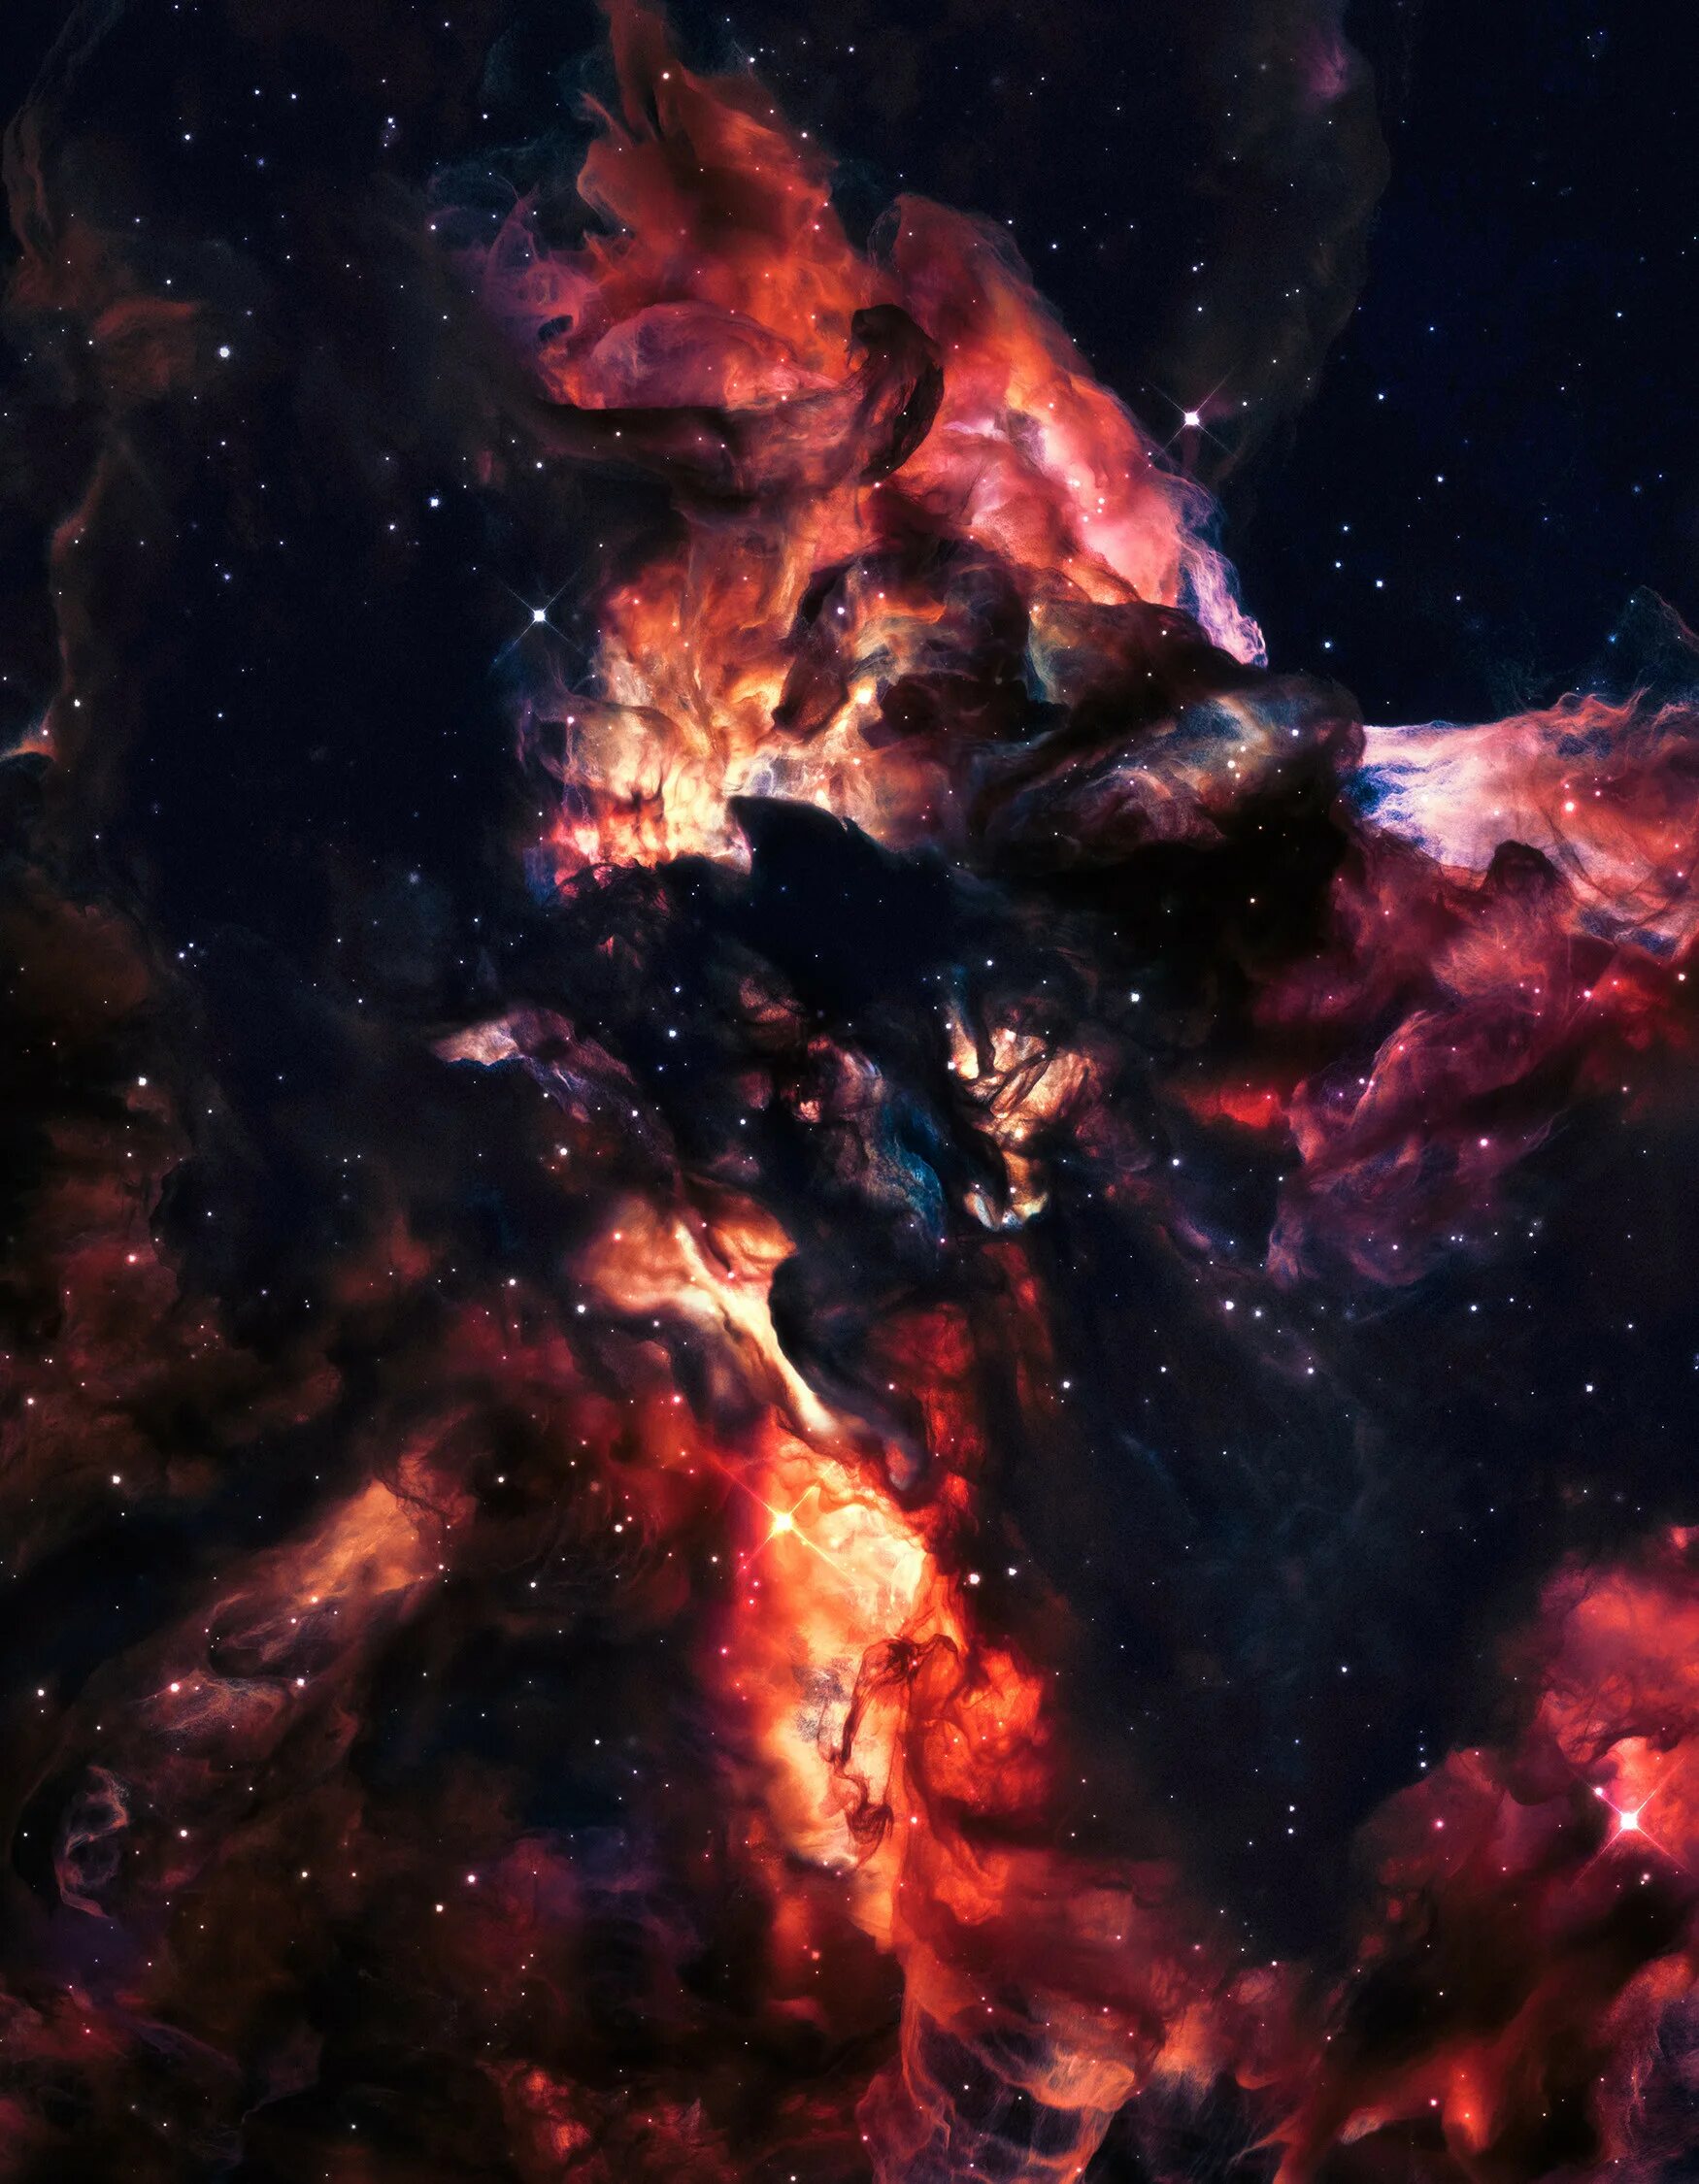 Космически невероятная. Космос текстура. Броня туманности. Теун Ван дер Залм туманности. Невероятный космос.